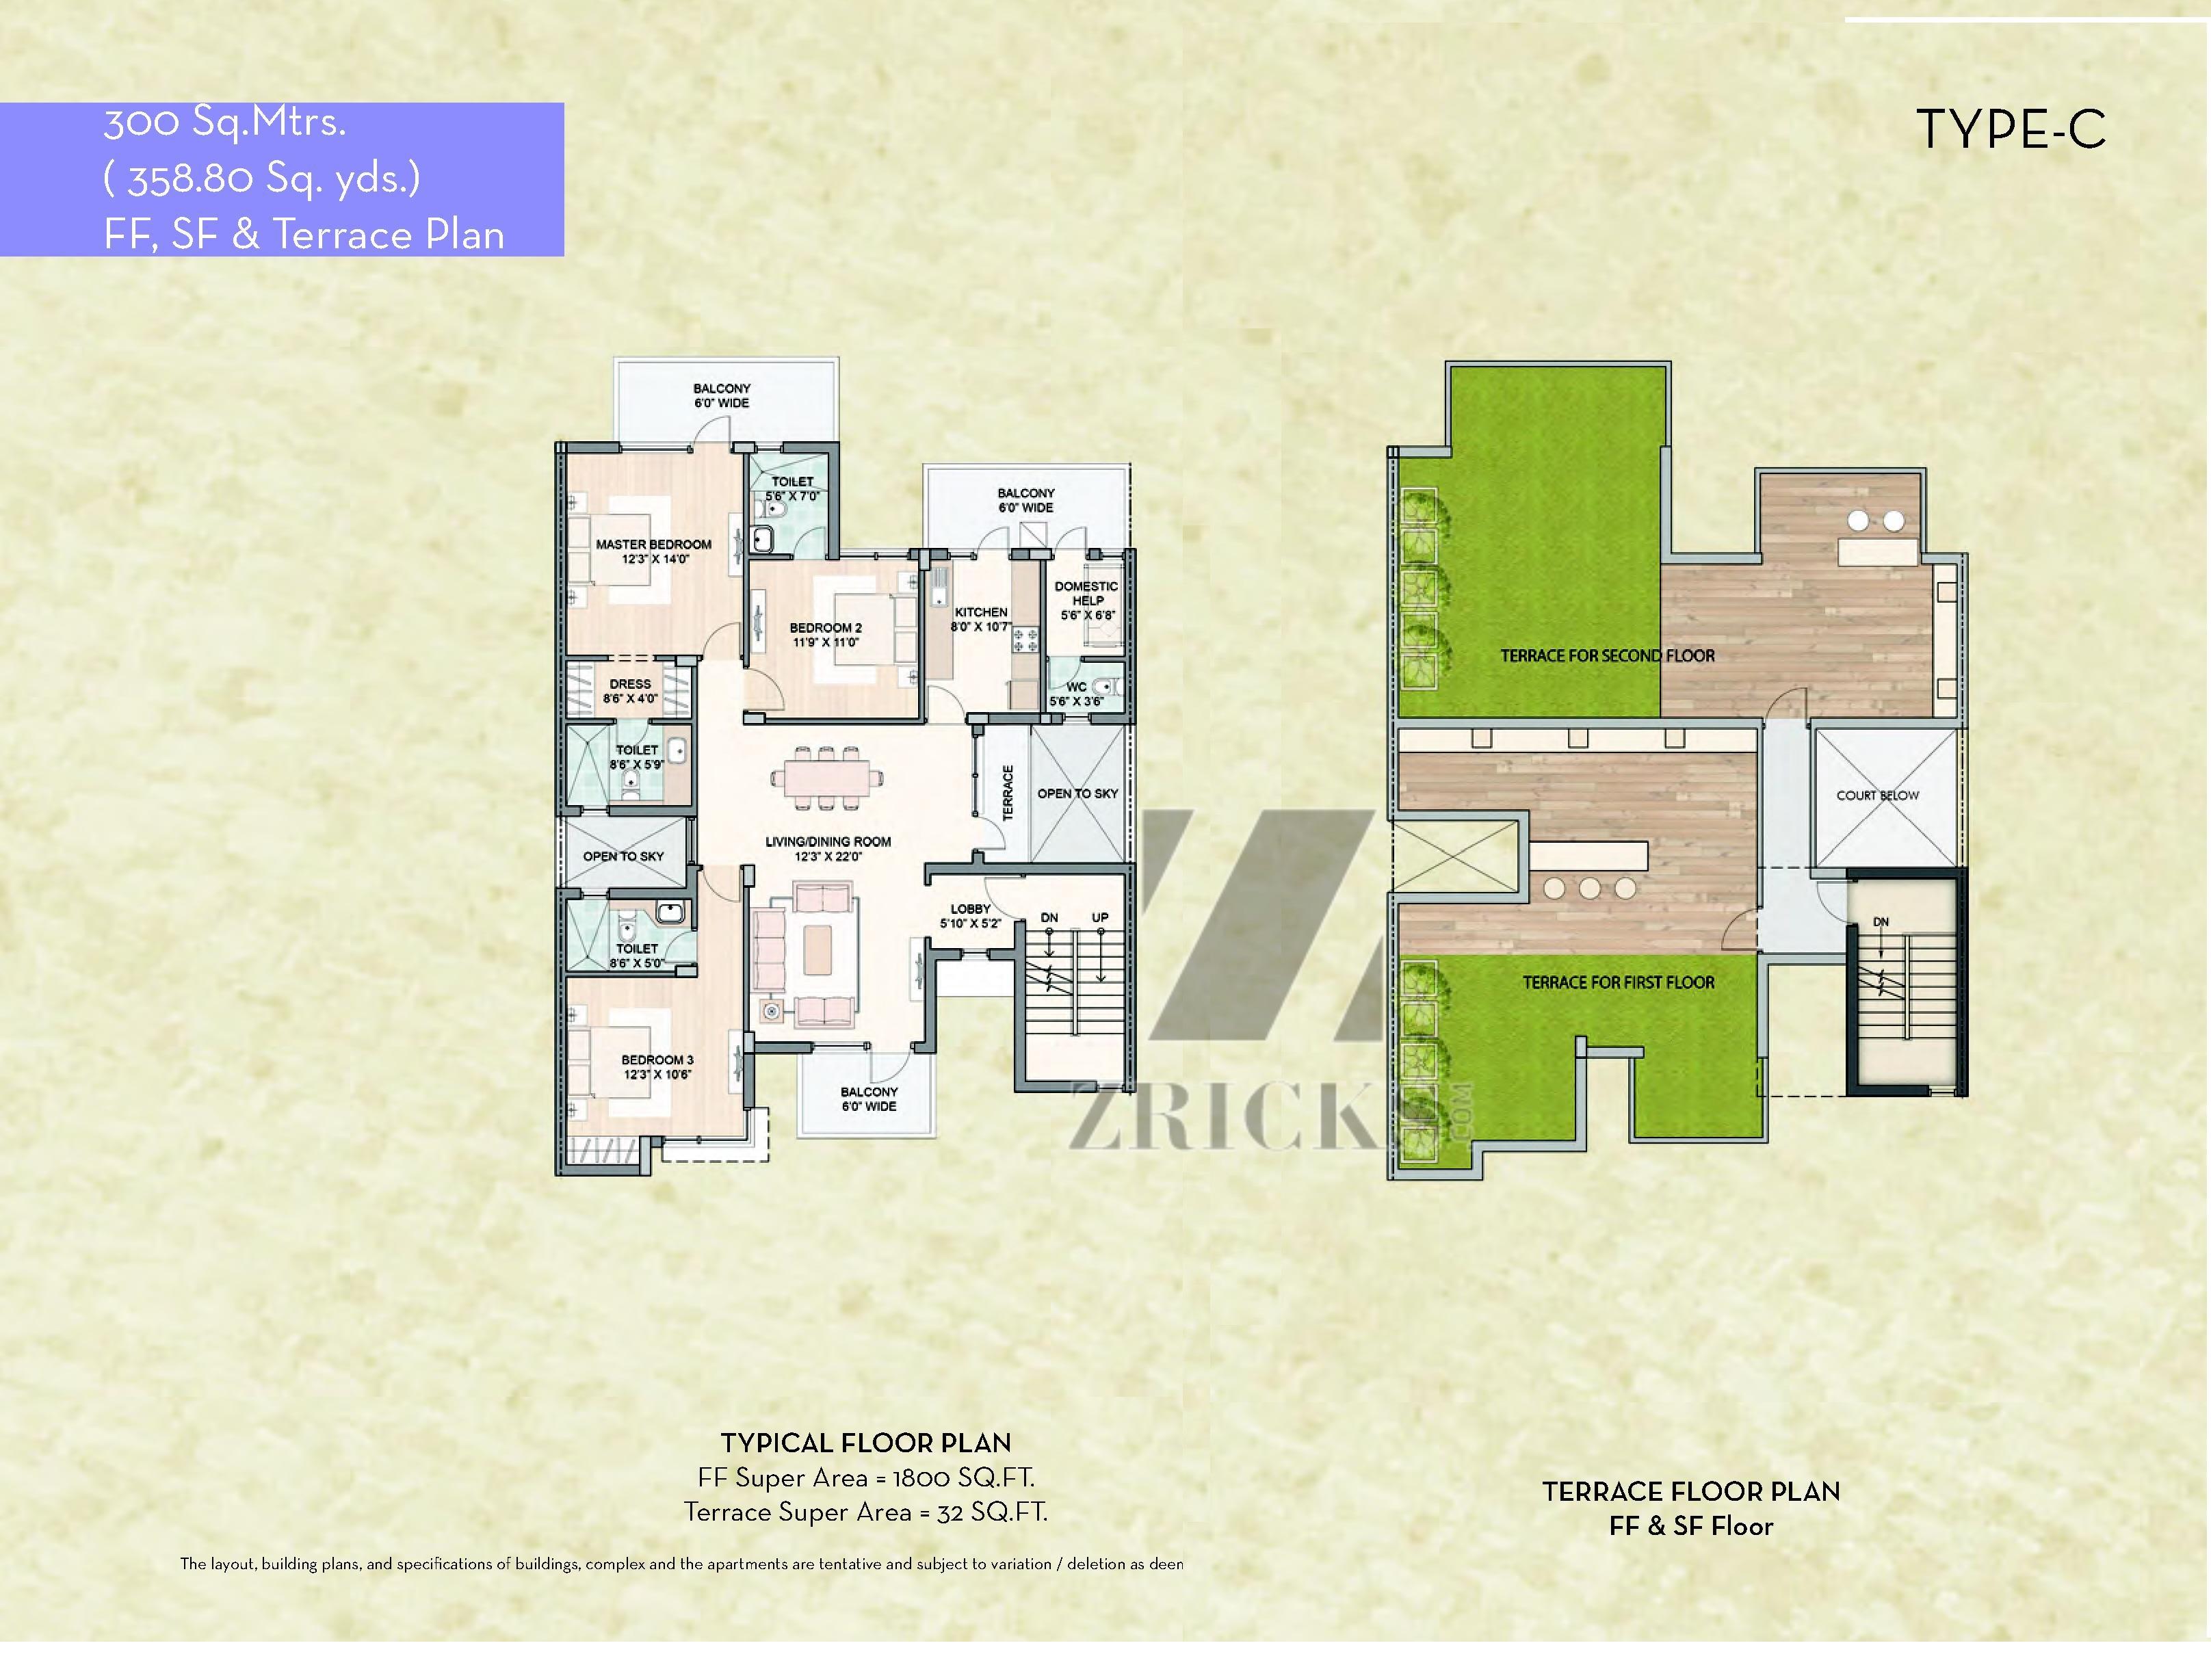 Unitech IVY Terraces Floor Plan